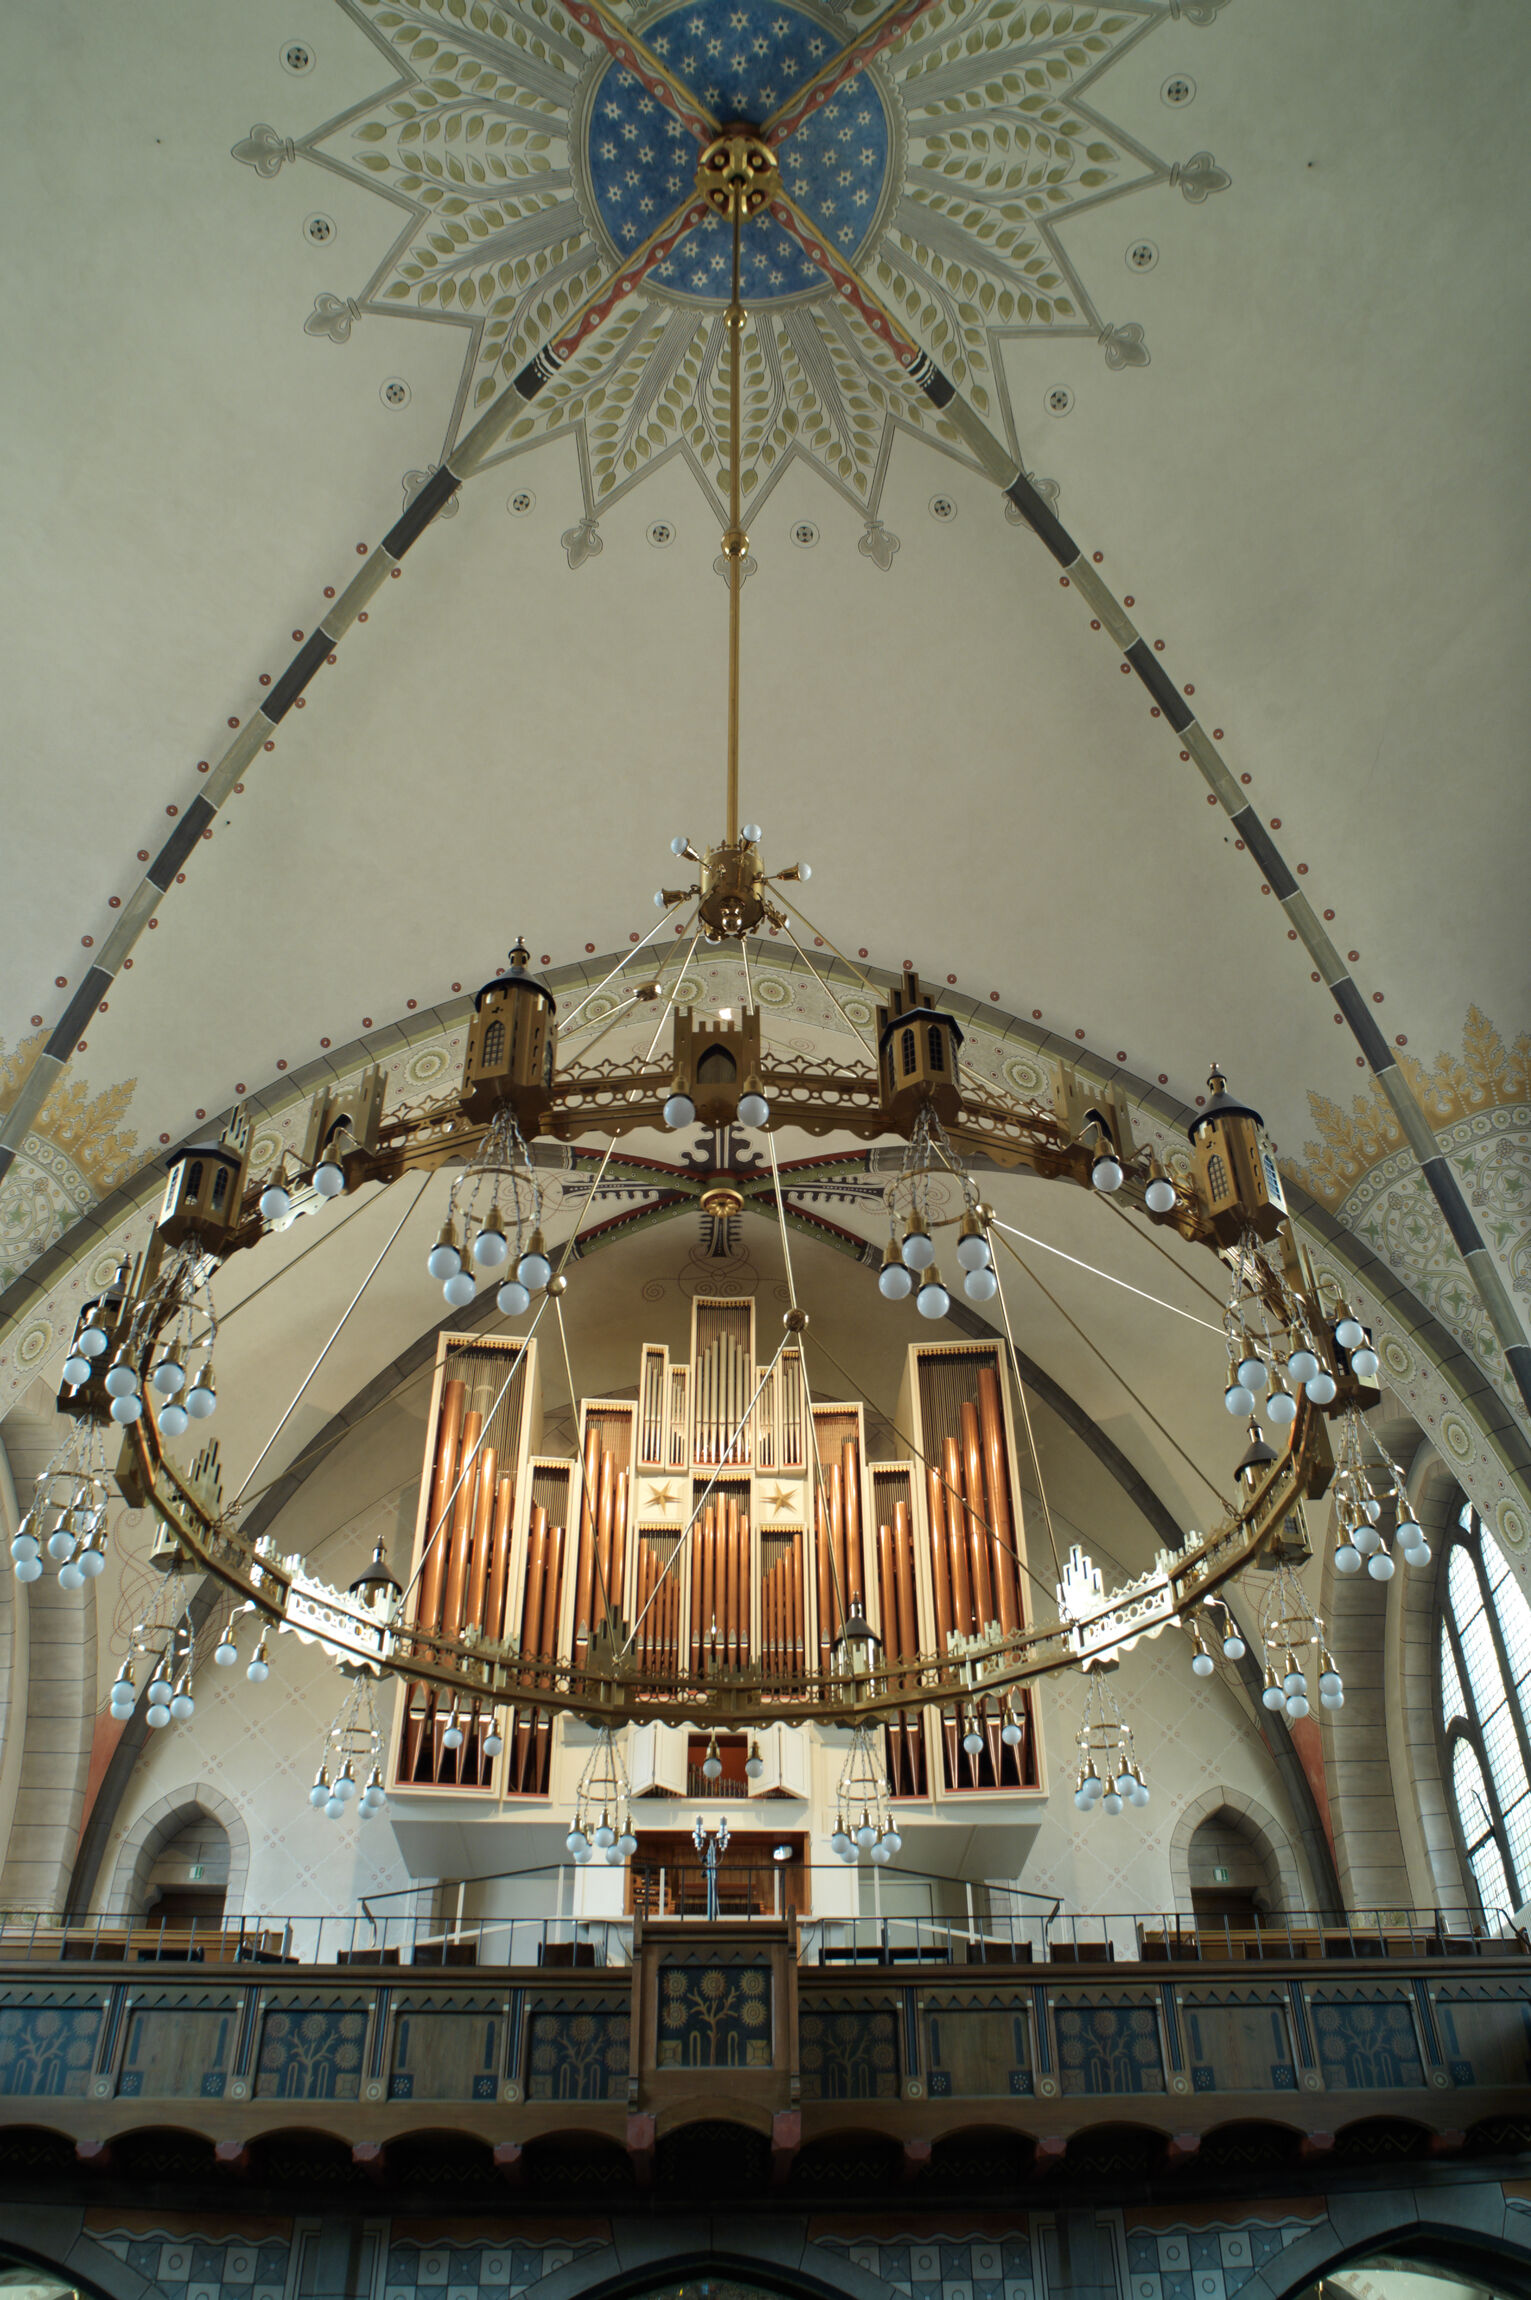 Orgel durch Radleuchter